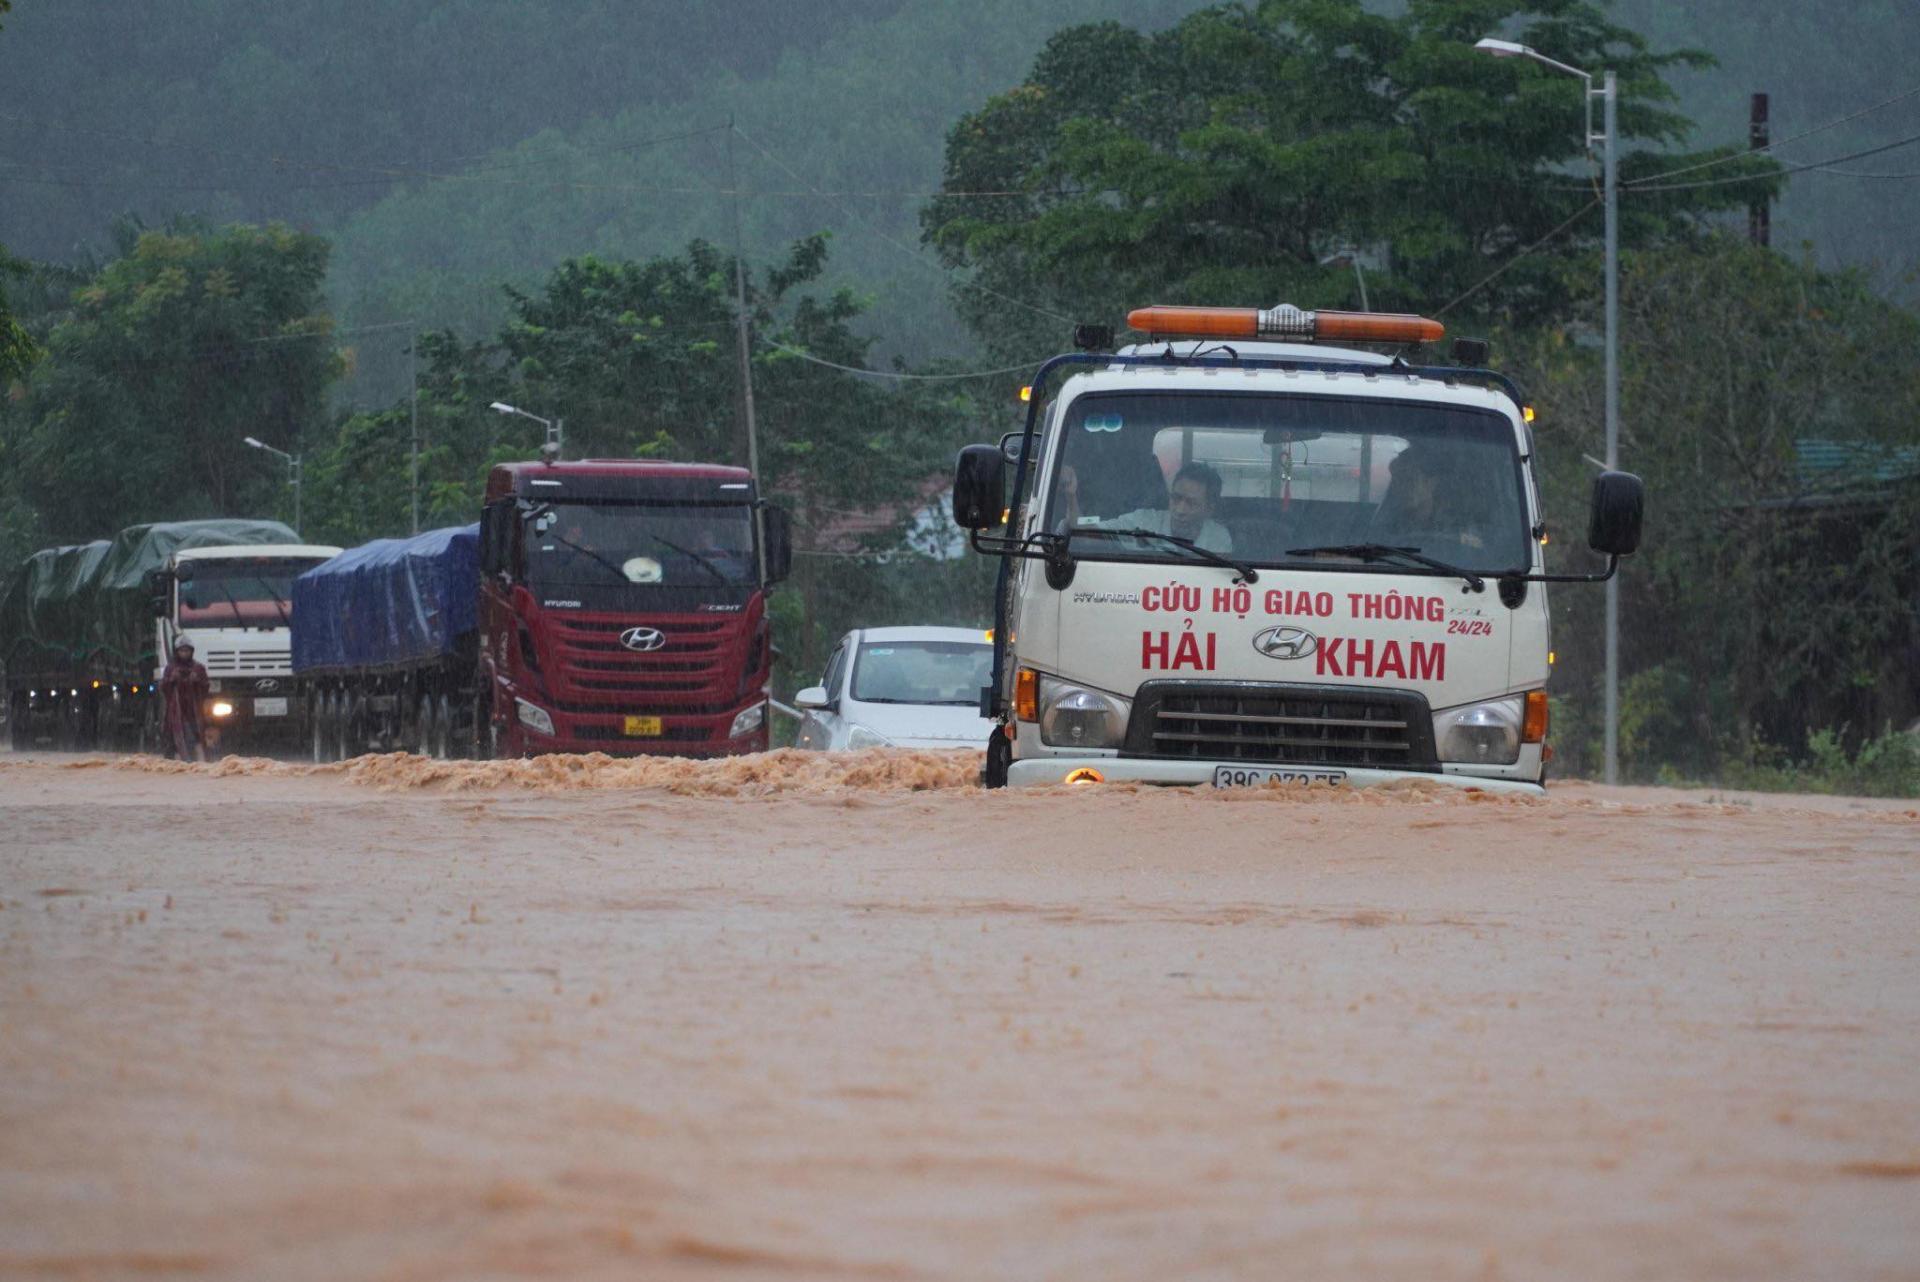 Miền Trung sắp có mưa lớn, tâm điểm Hà Tĩnh đến Phú Yên. Ảnh đợt mưa ngập đường quốc lộ hồi đầu tháng 11 tại Hà Tĩnh (Thiện Lương)